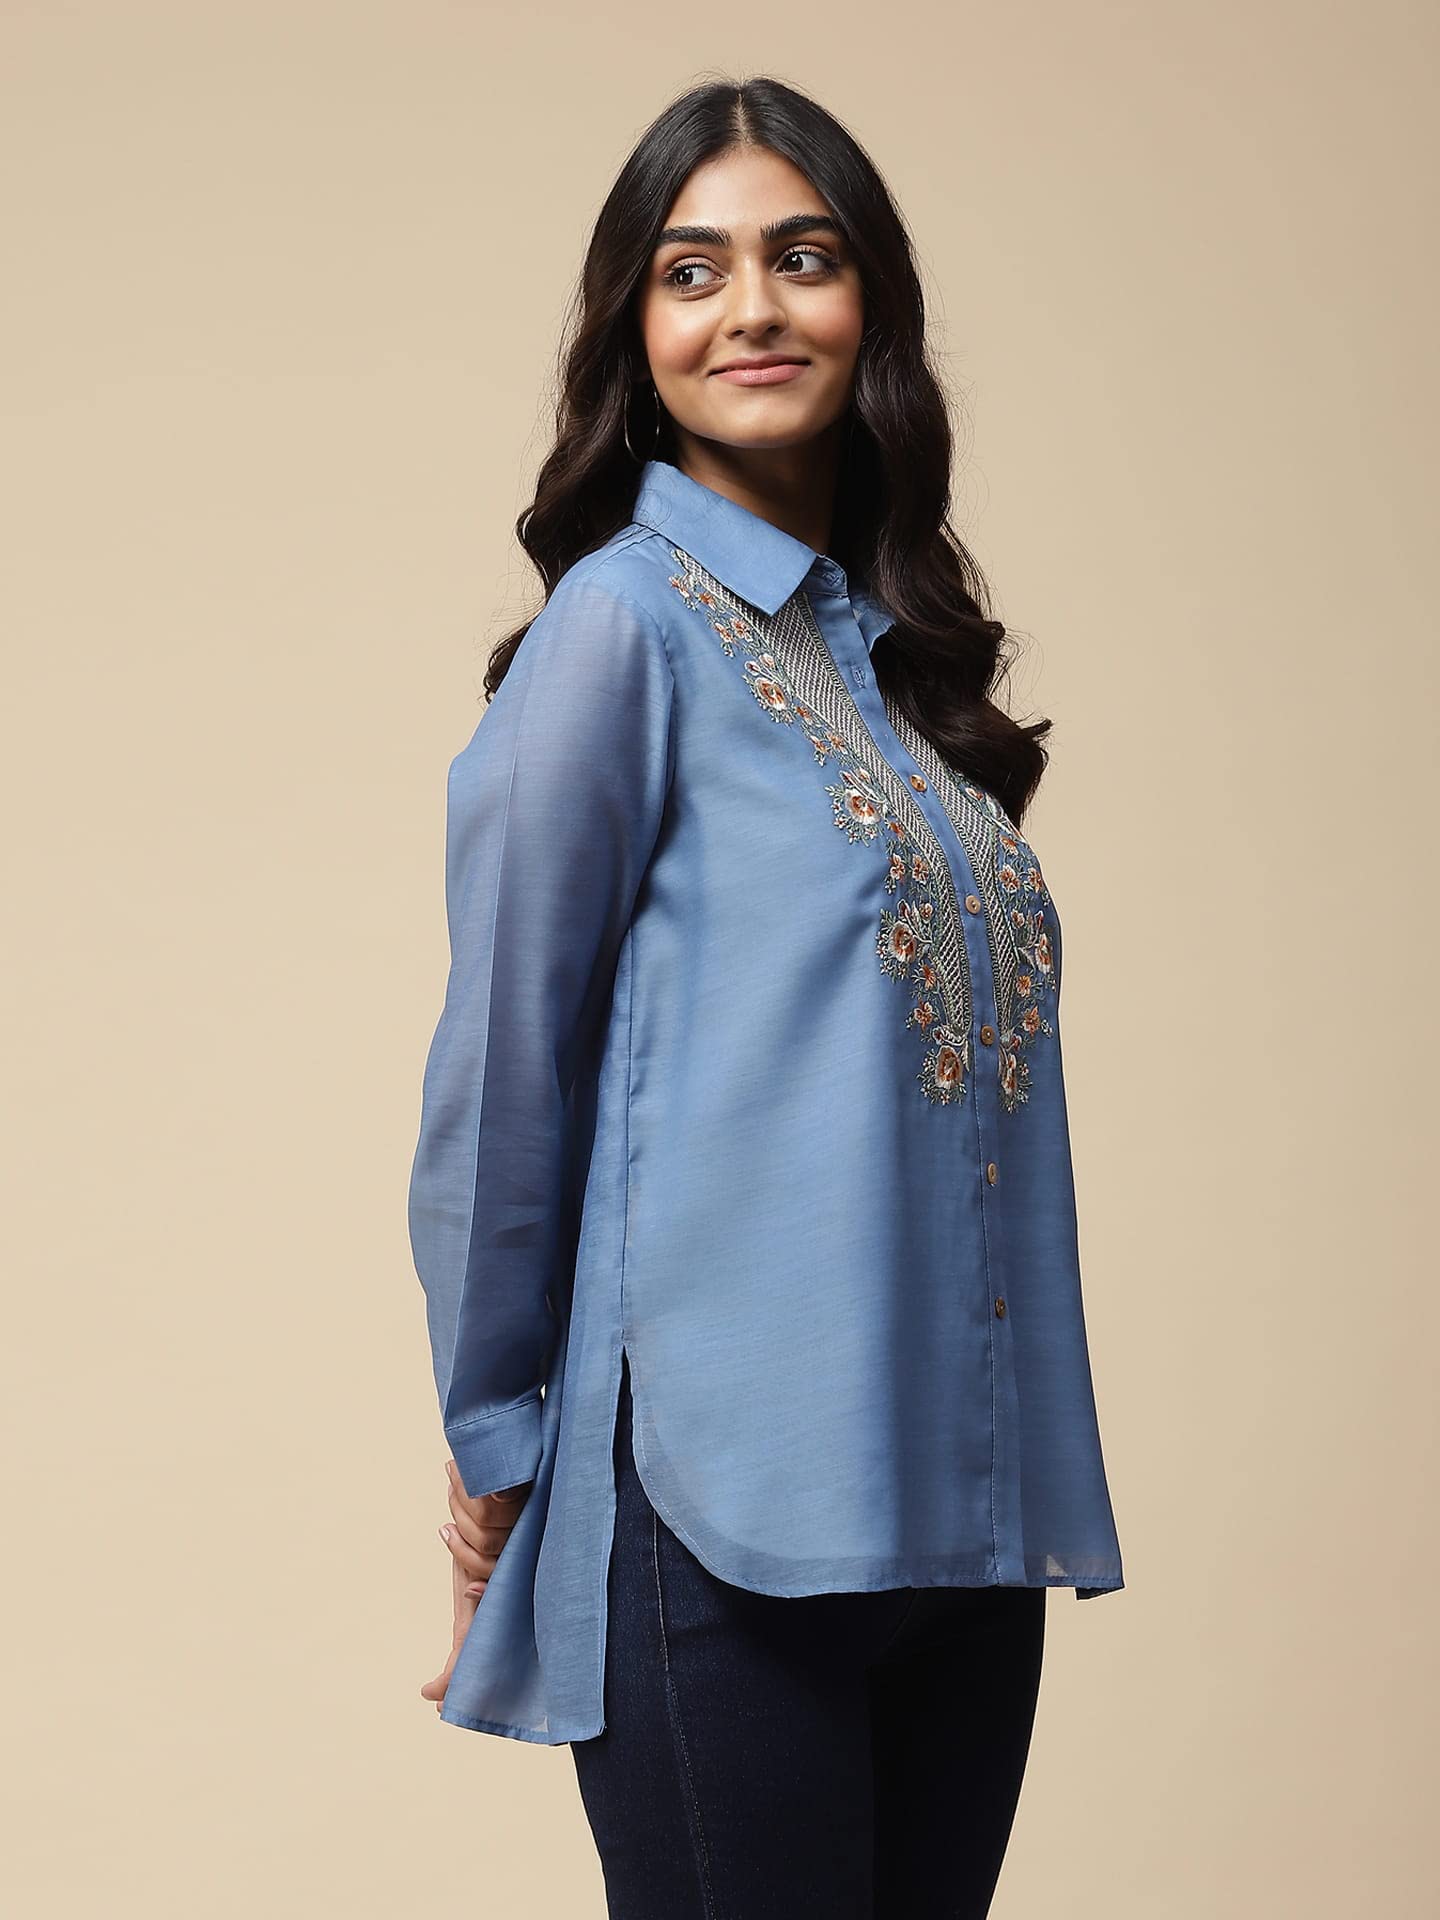 Aarke Ritu Kumar Sea Blue Embroidered Shirt